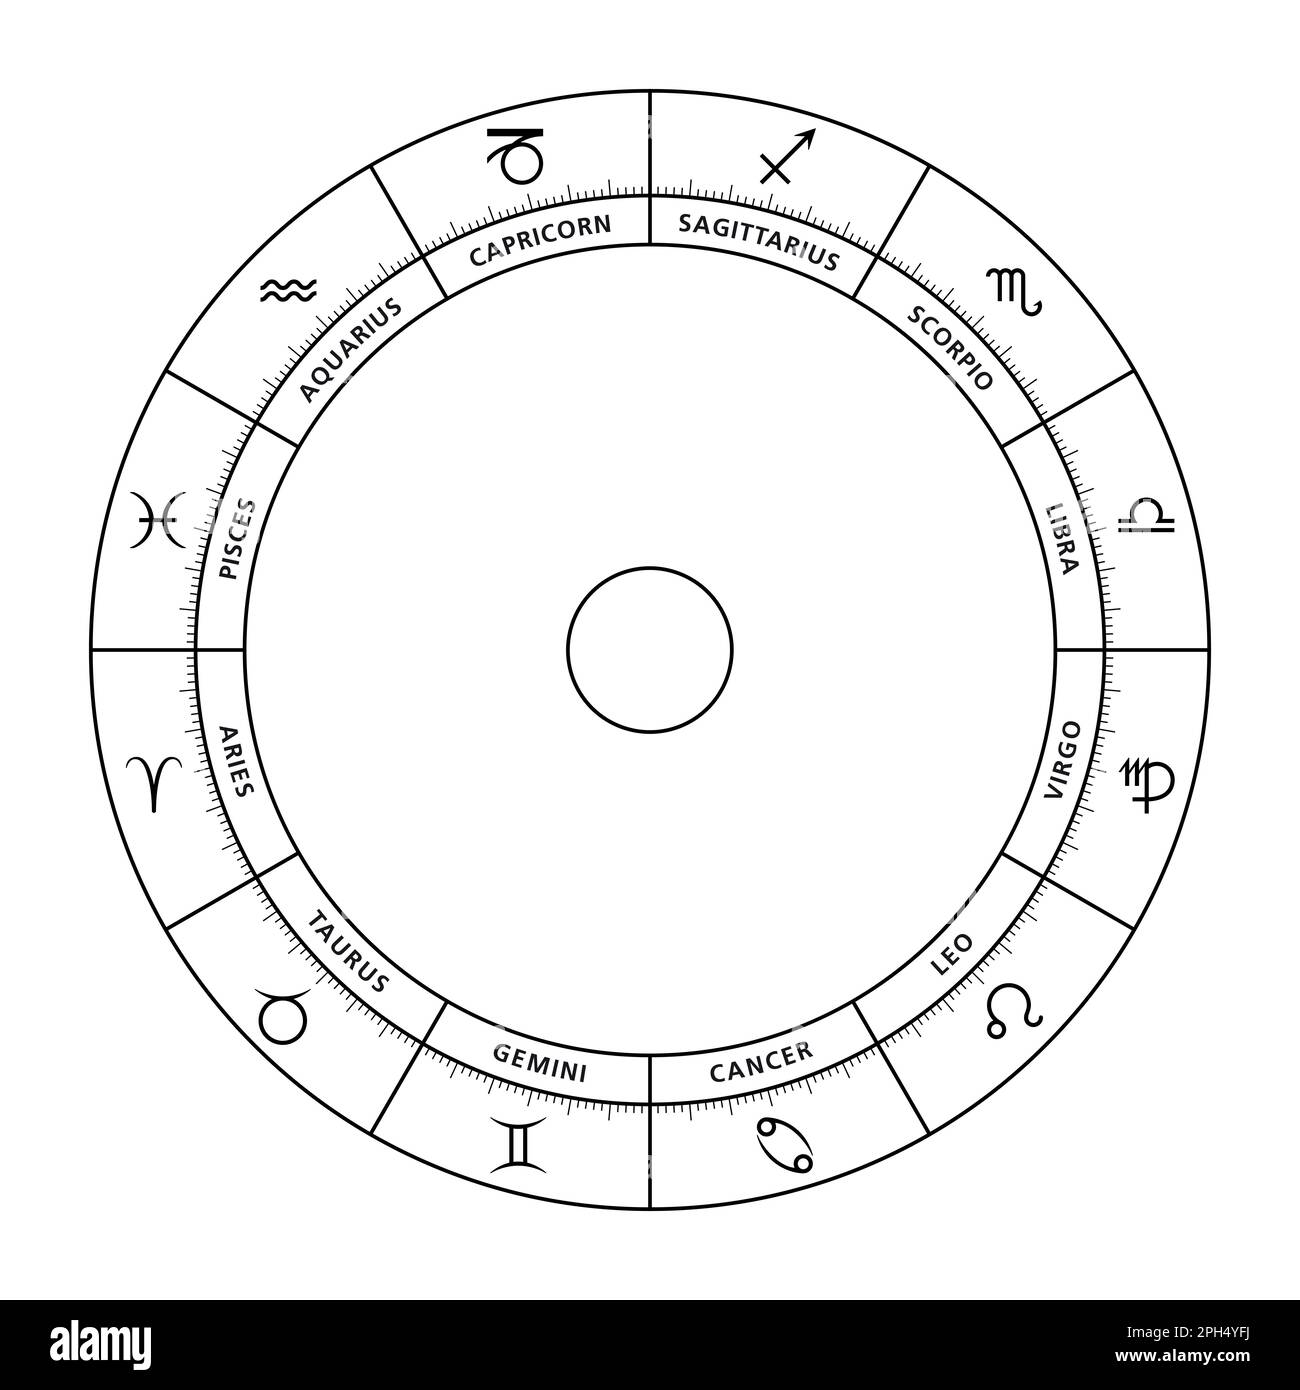 Ruota zodiacale, con segni astrologici e i loro nomi latini. Grafico astrologico e cerchio con dodici tipi di personalità, modi di espressione. Foto Stock